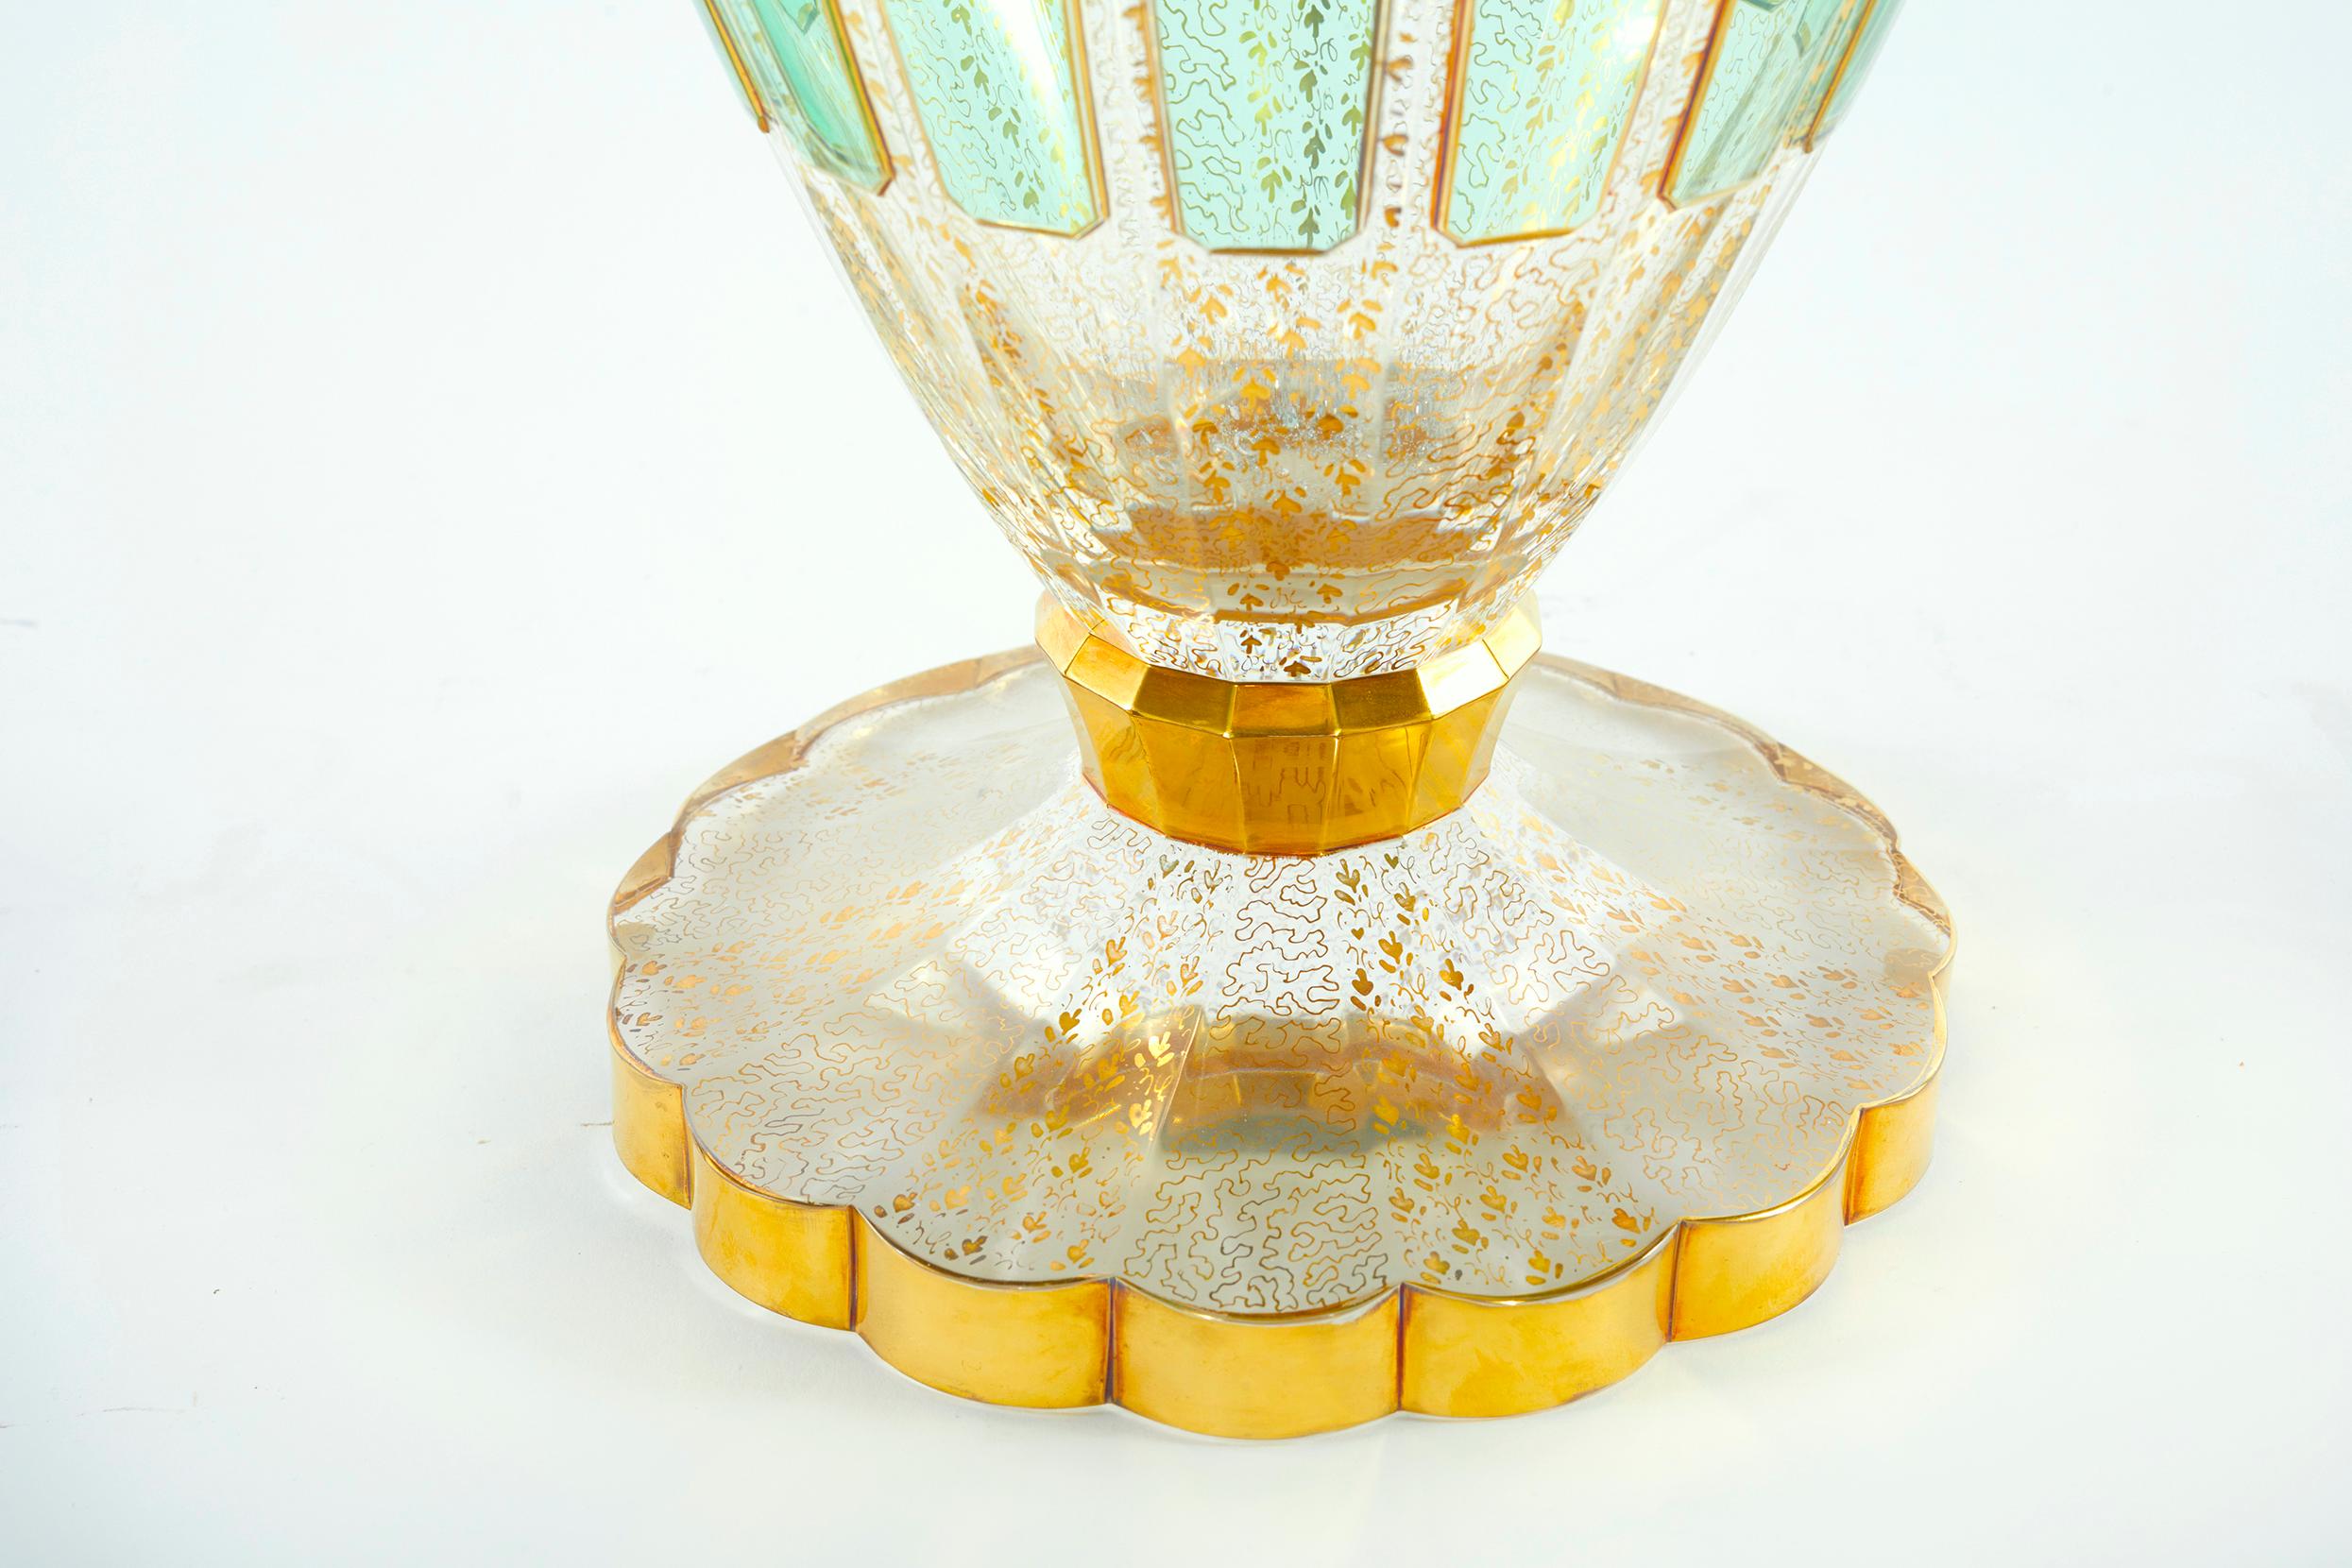 Sehr große Moser emailliert grün getäfelt mit vergoldetem Design Details dekorative Vase / Stück. Die Vase ist in sehr gutem Zustand. Leichte Regalabnutzung an der Unterseite. Keine Mängel beobachtet, die Dekoration ist hell und intakt. Das Stück